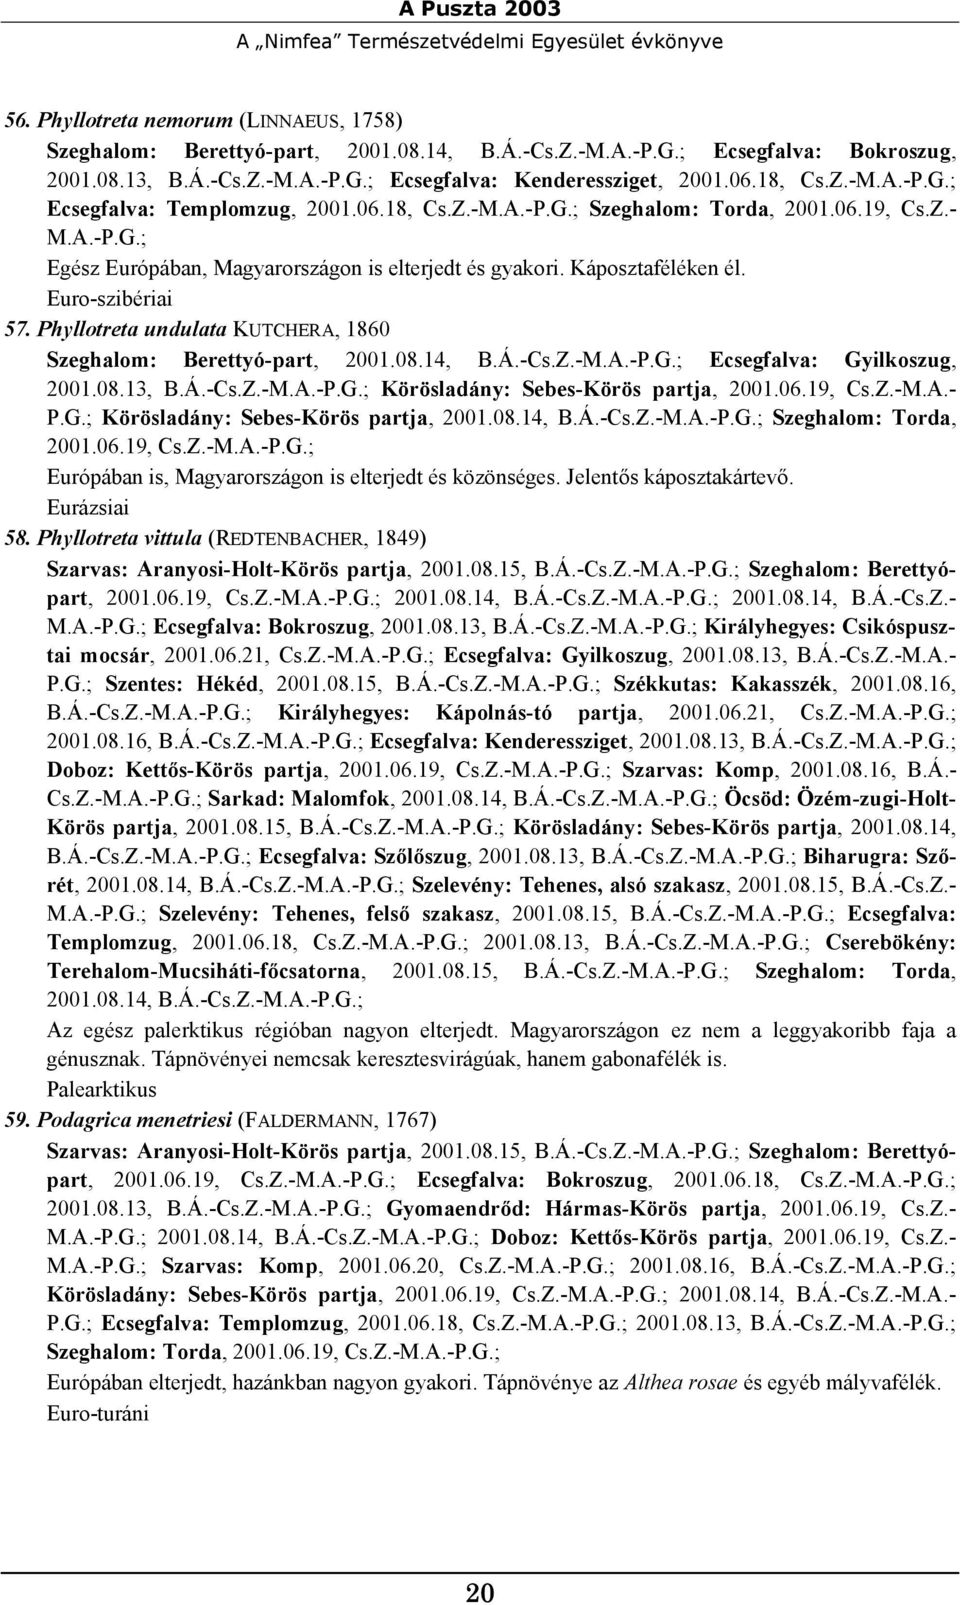 Káposztaféléken él. 57. Phyllotreta undulata KUTCHERA, 1860 Szeghalom: Berettyó-part, 2001.08.14, B.Á.-Cs.Z.-M.A.-P.G.; Ecsegfalva: Gyilkoszug, 2001.08.13, B.Á.-Cs.Z.-M.A.-P.G.; Körösladány: Sebes-Körös partja, 2001.